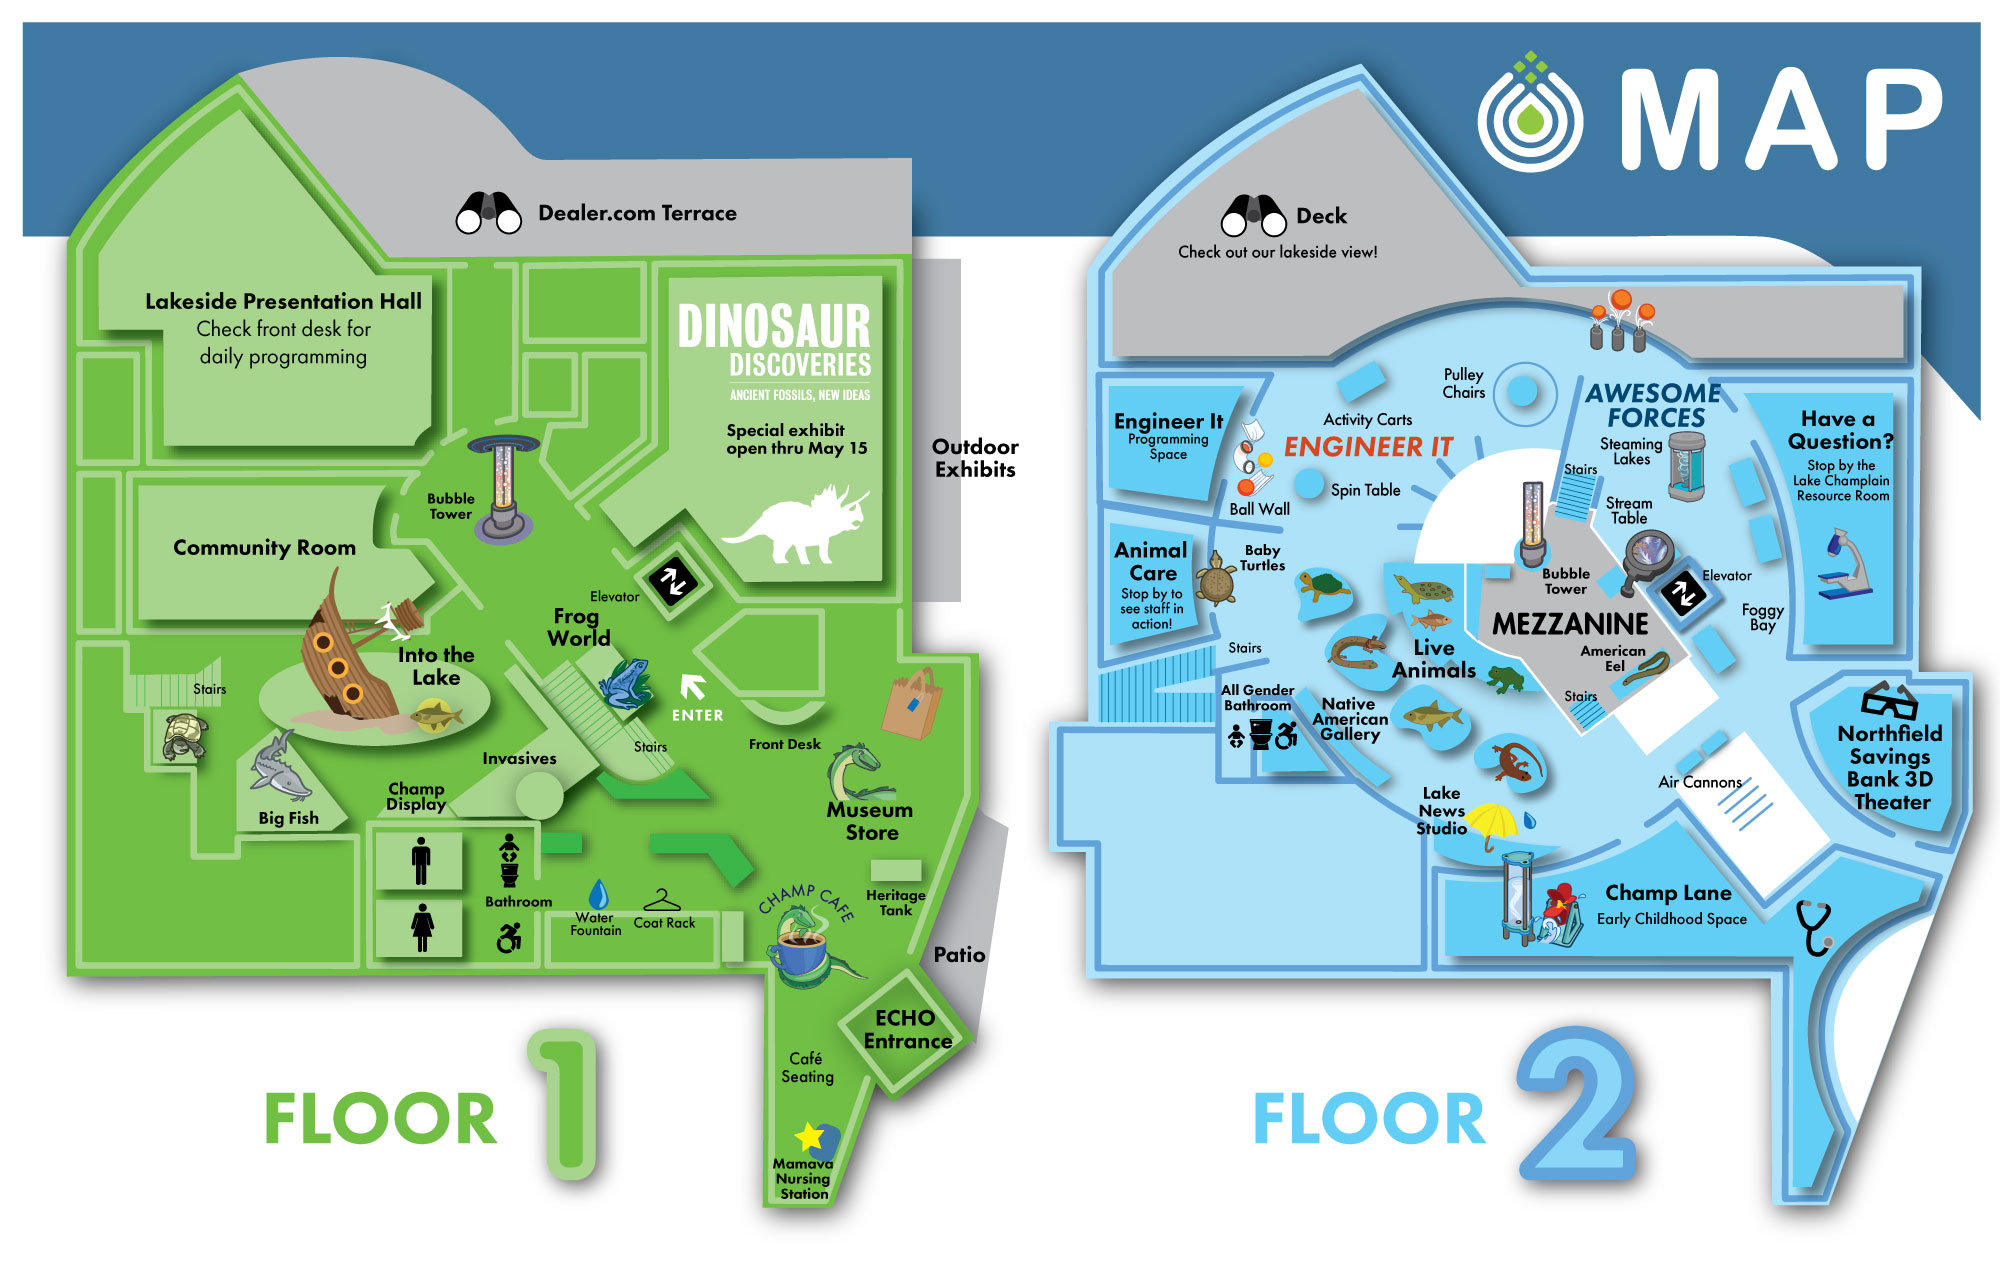 Map of Floor 1 and Floor 2 of ECHO